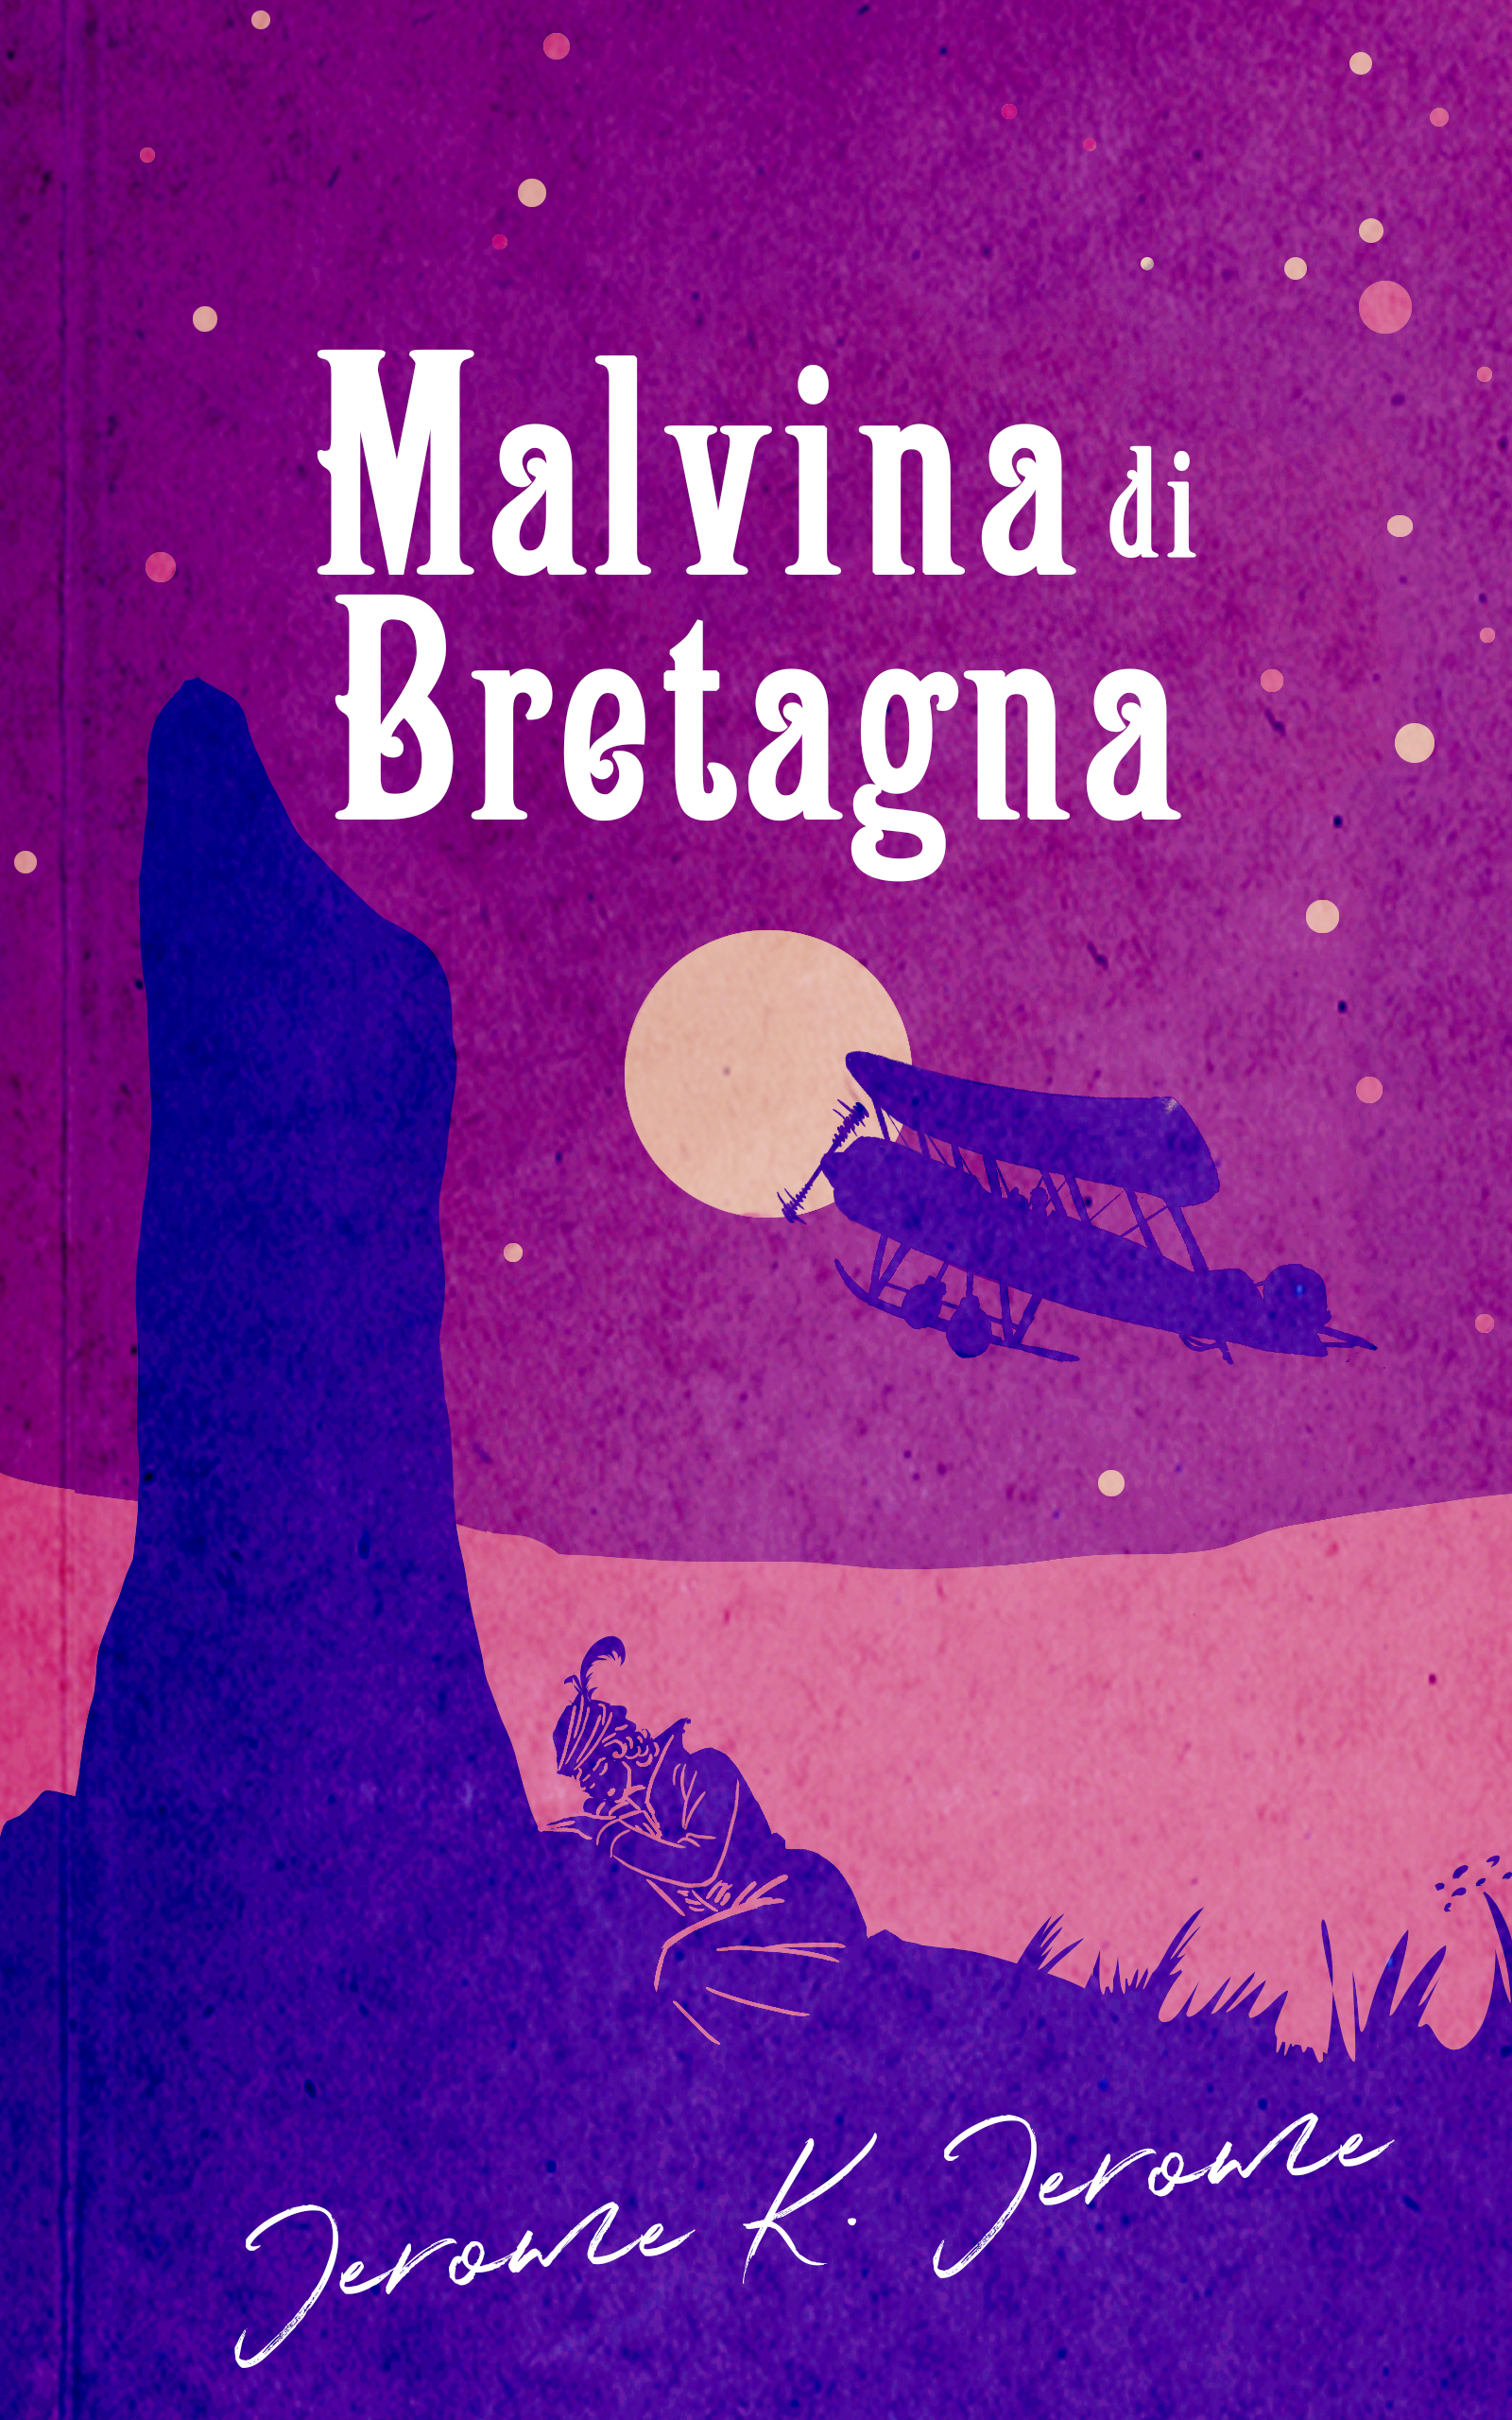 Malvina di Bretagna (Italiano language)